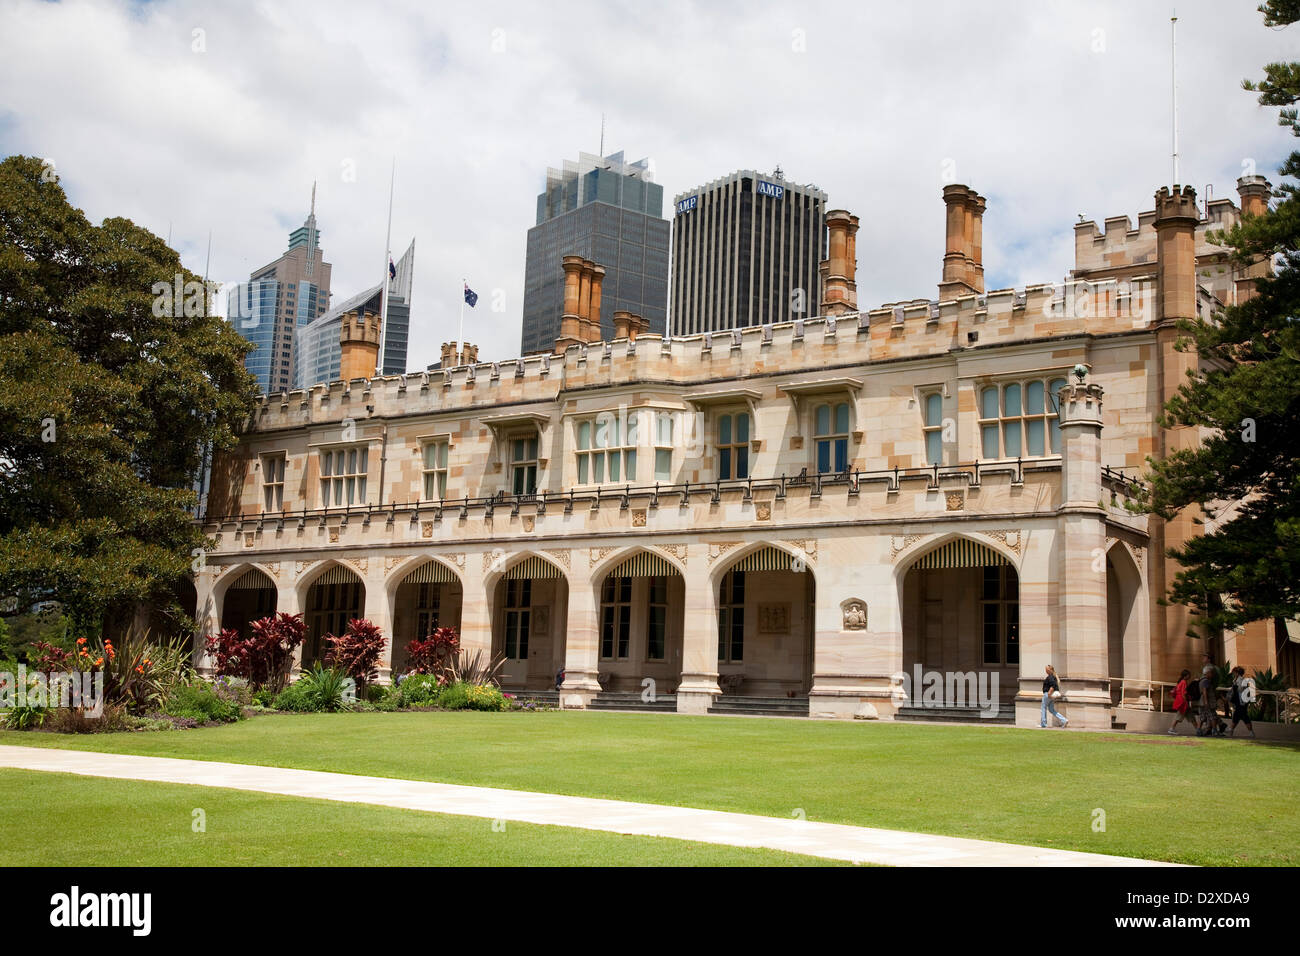 Uno di Sydney i migliori esempi di architettura vittoriana Government House Royal Botanical Gardens Sydney Australia Foto Stock